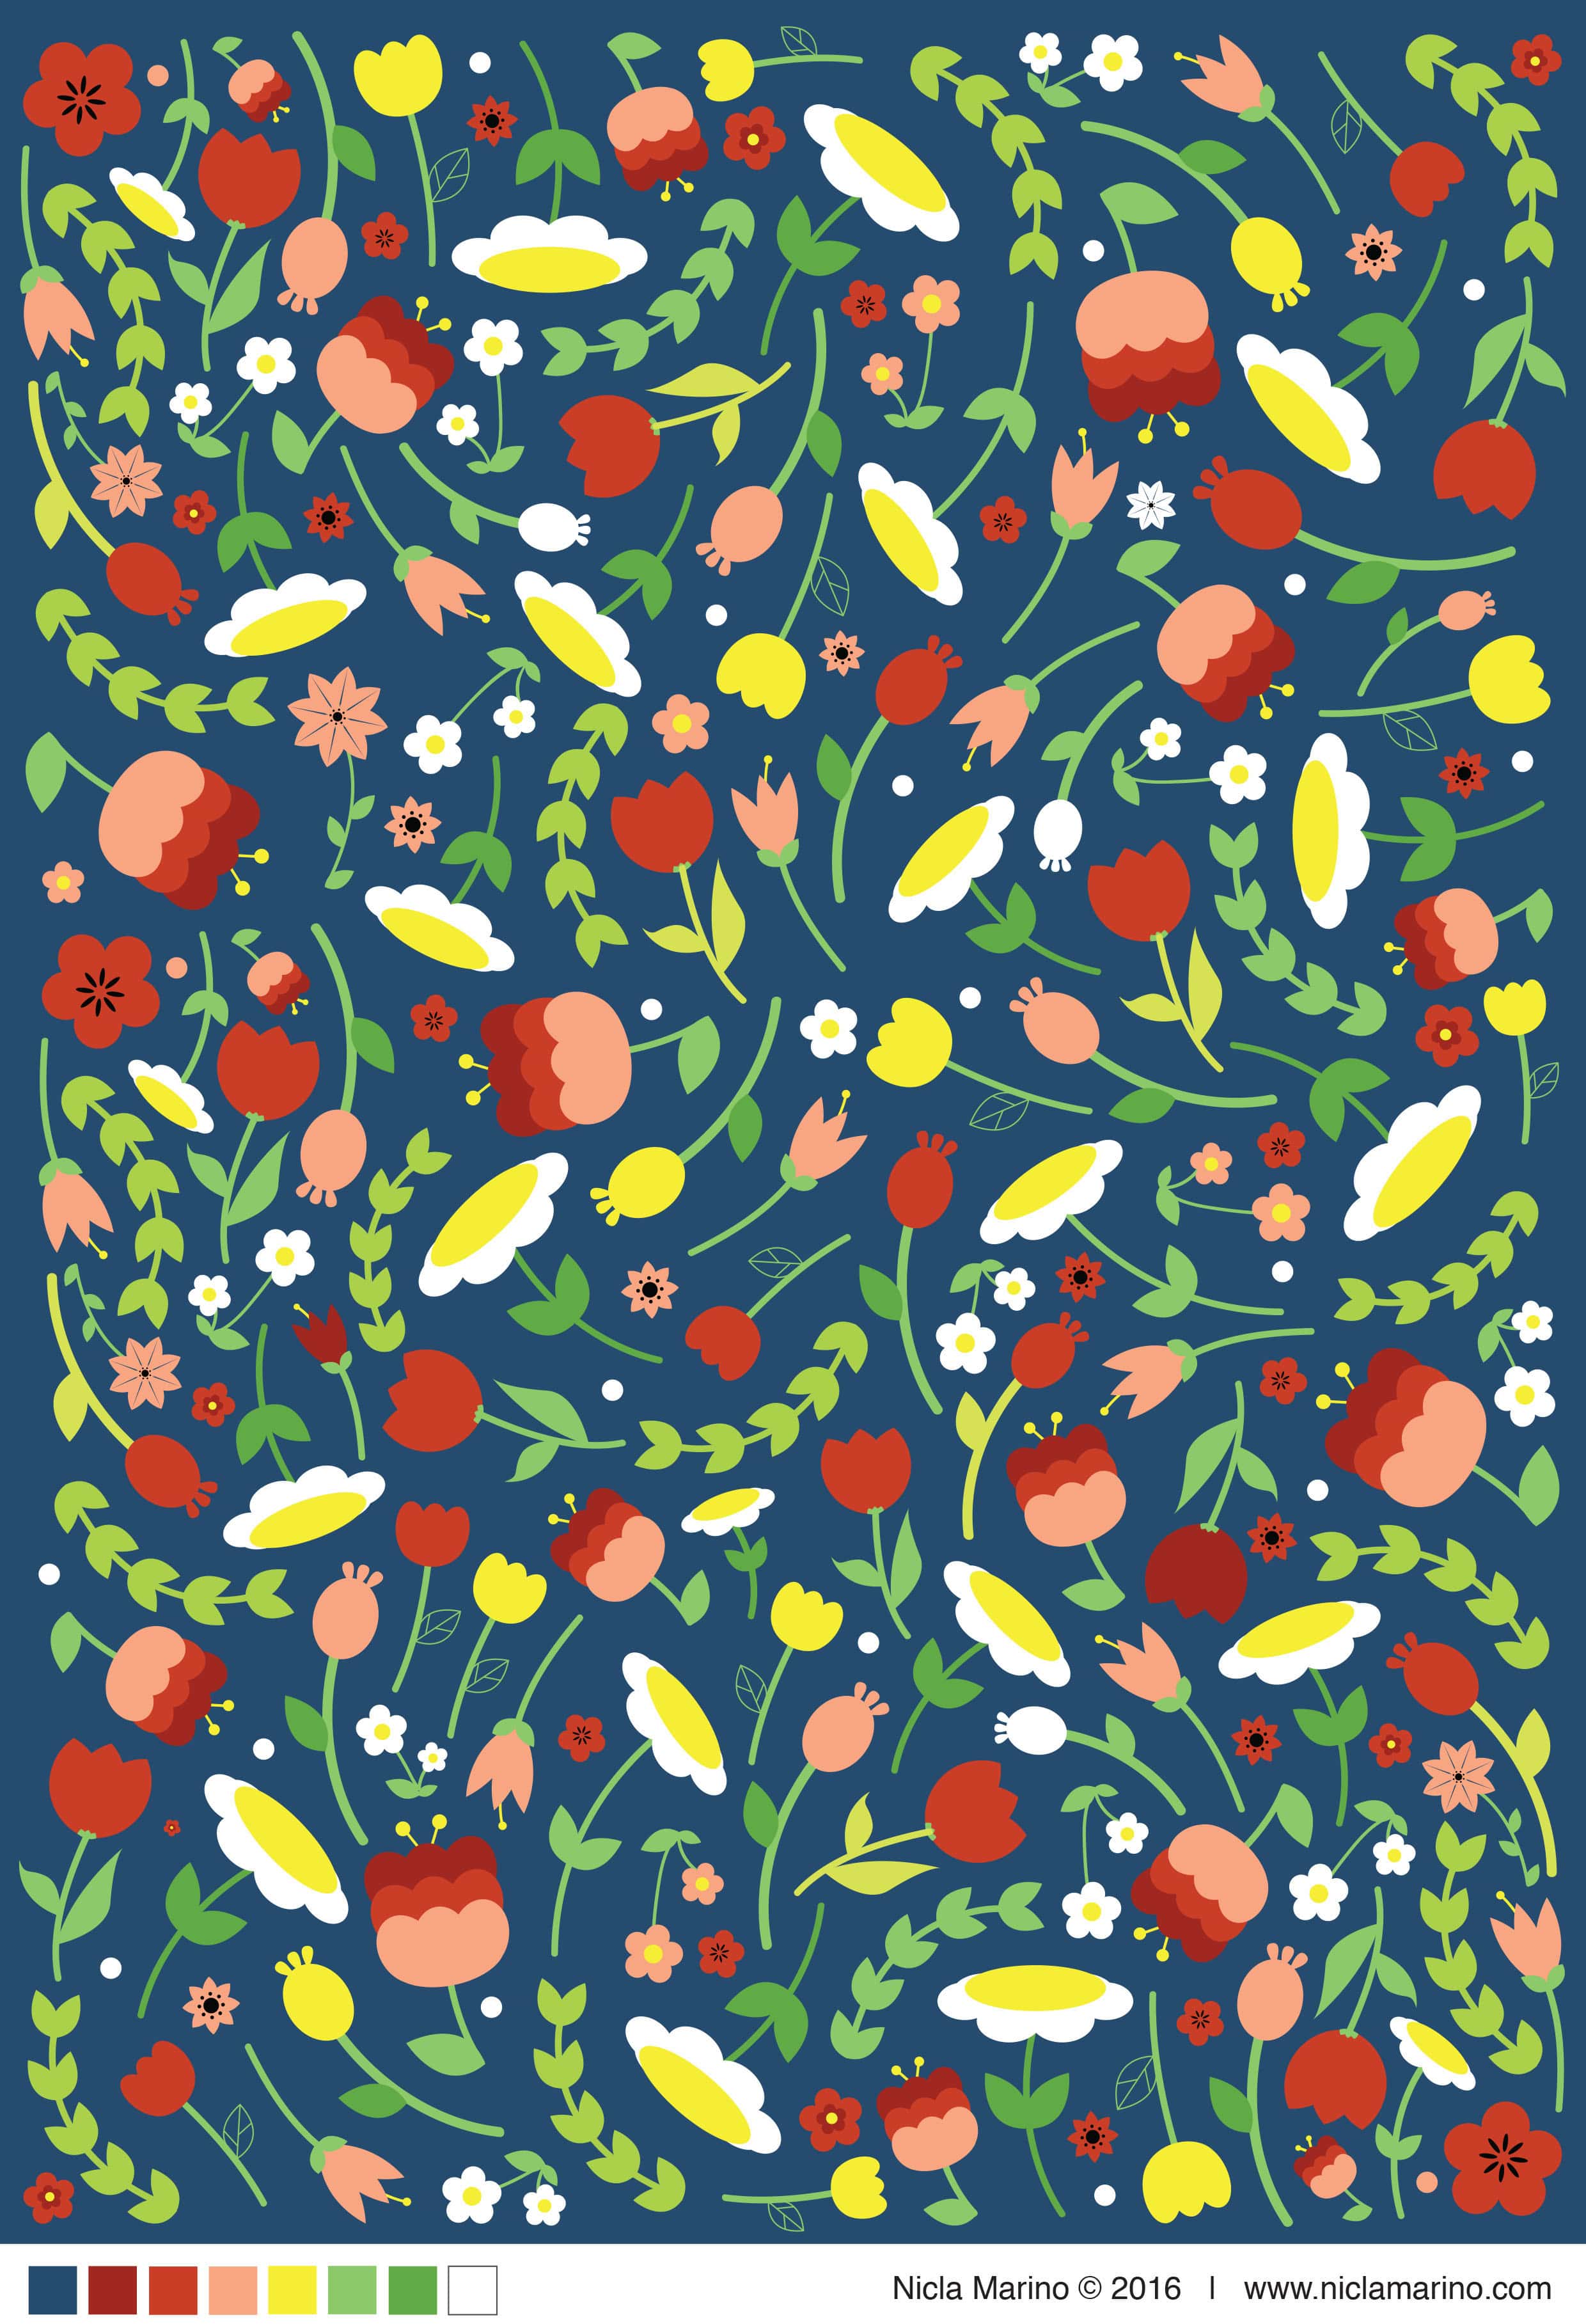 nicla-marino-floral-pattern-02-min